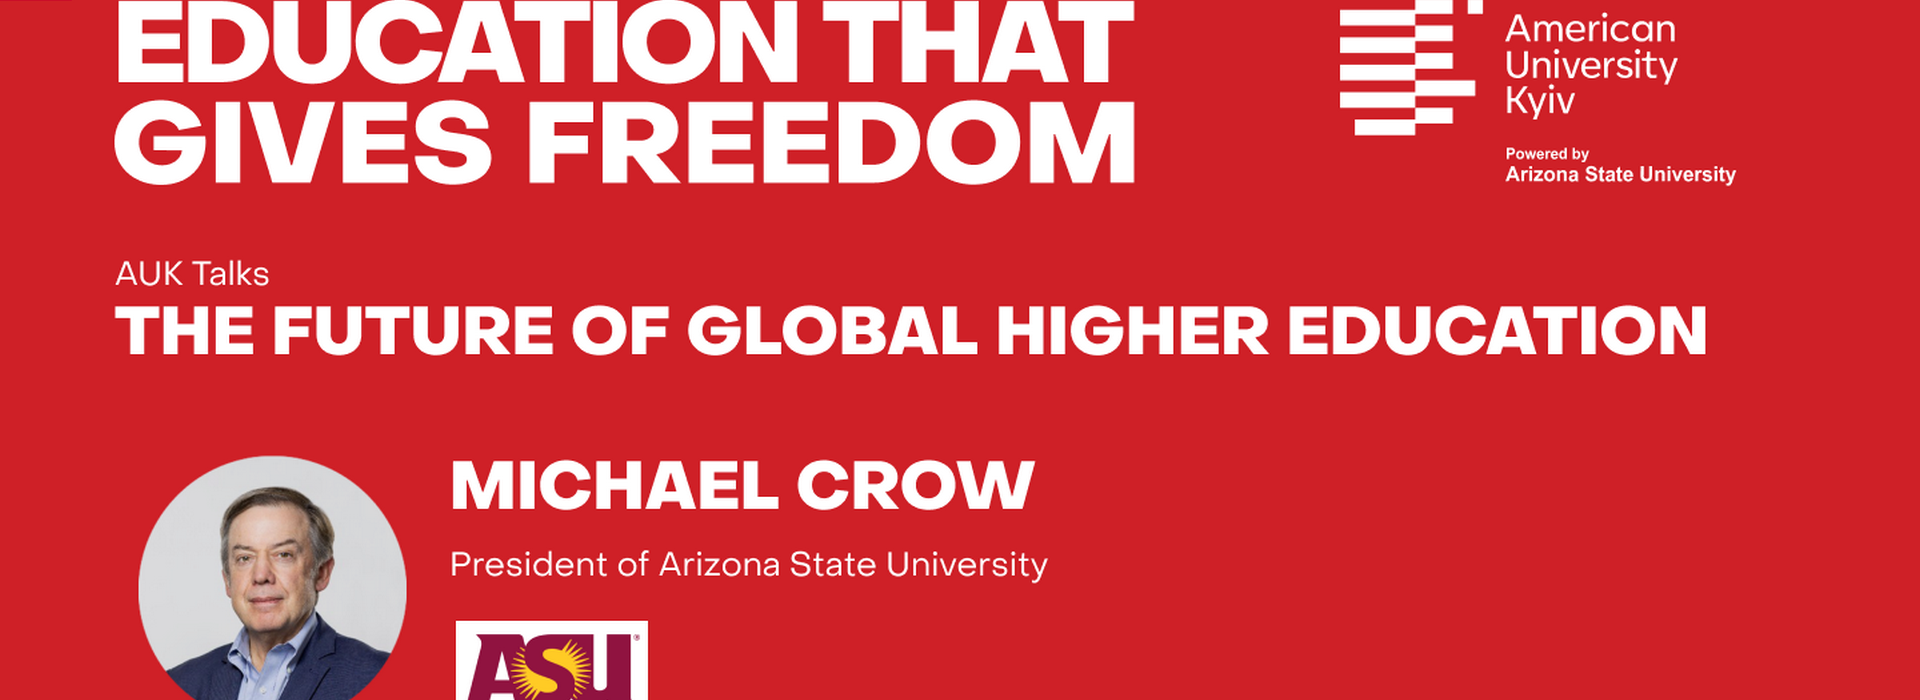 Онлайн AUK Talks «Майбутнє глобальної вищої освіти» з Майклом М. Кроу, президентом Arizona State University